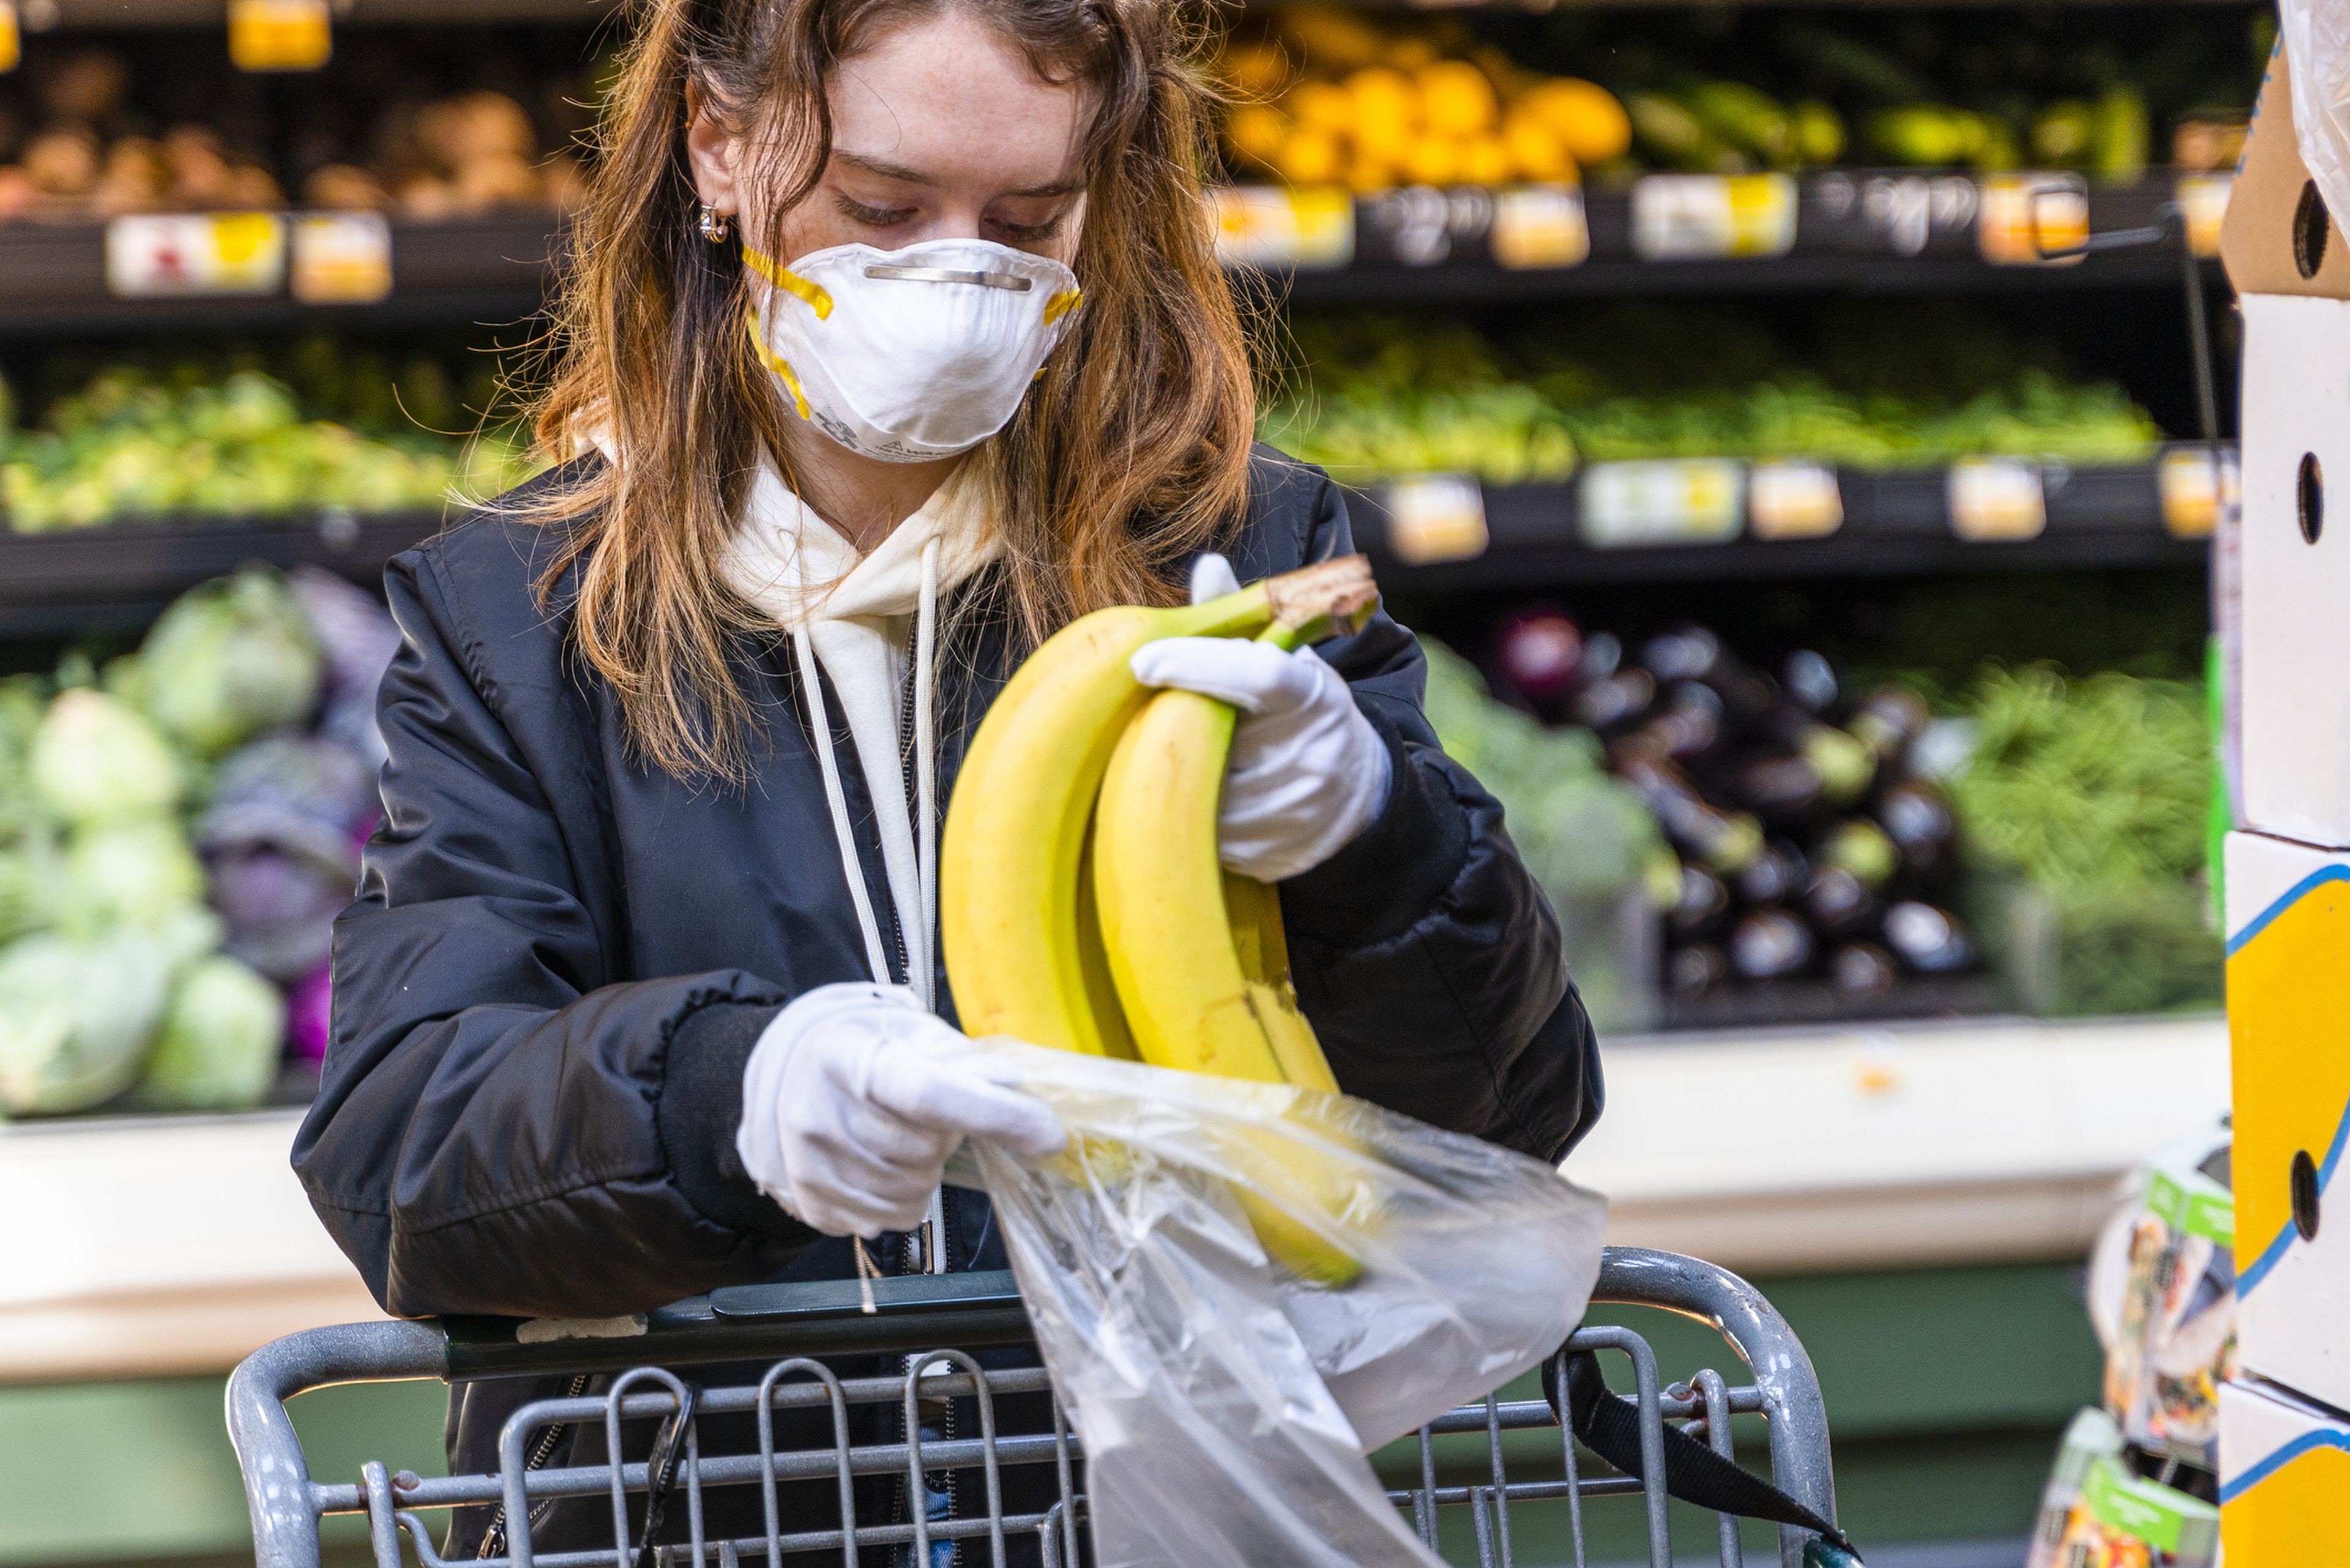 Chica comprando plátanos en un supermercado con mascarilla y guantes.